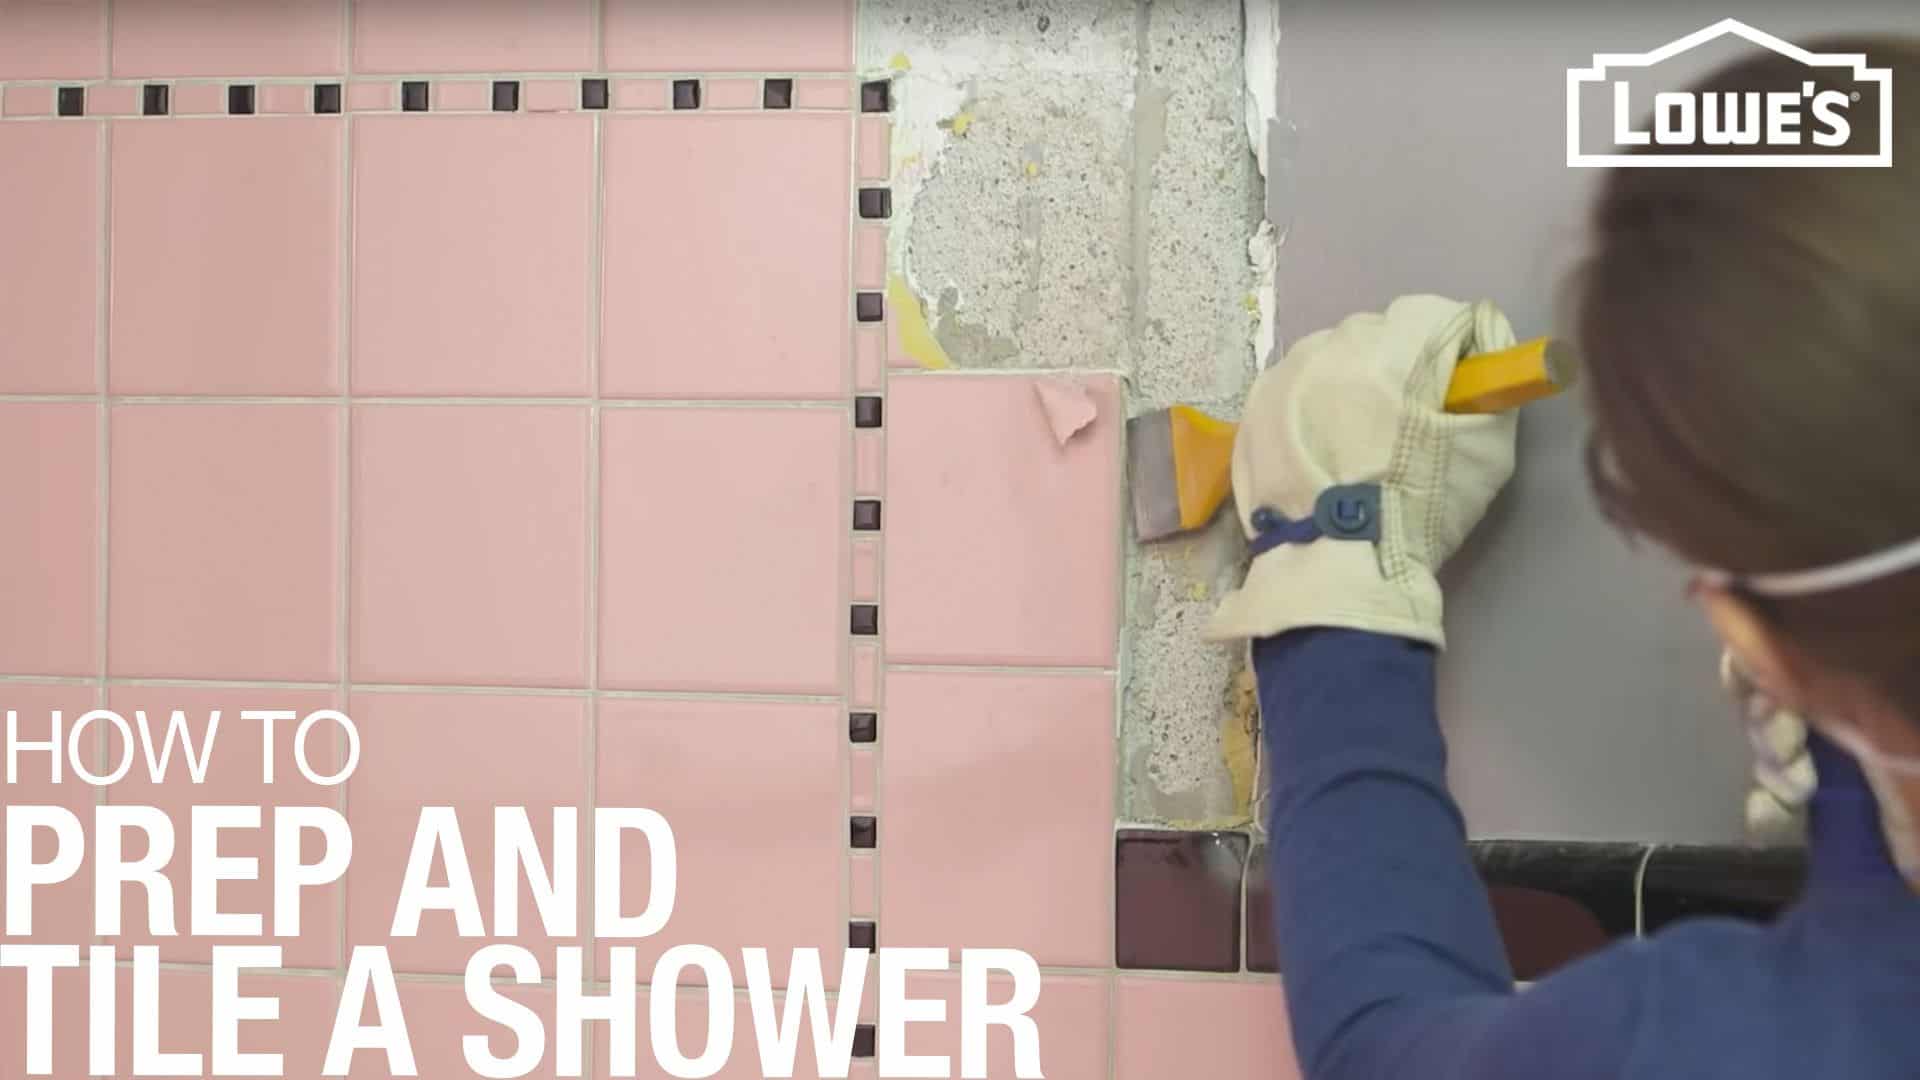 Full prep guides for subway tiled showers